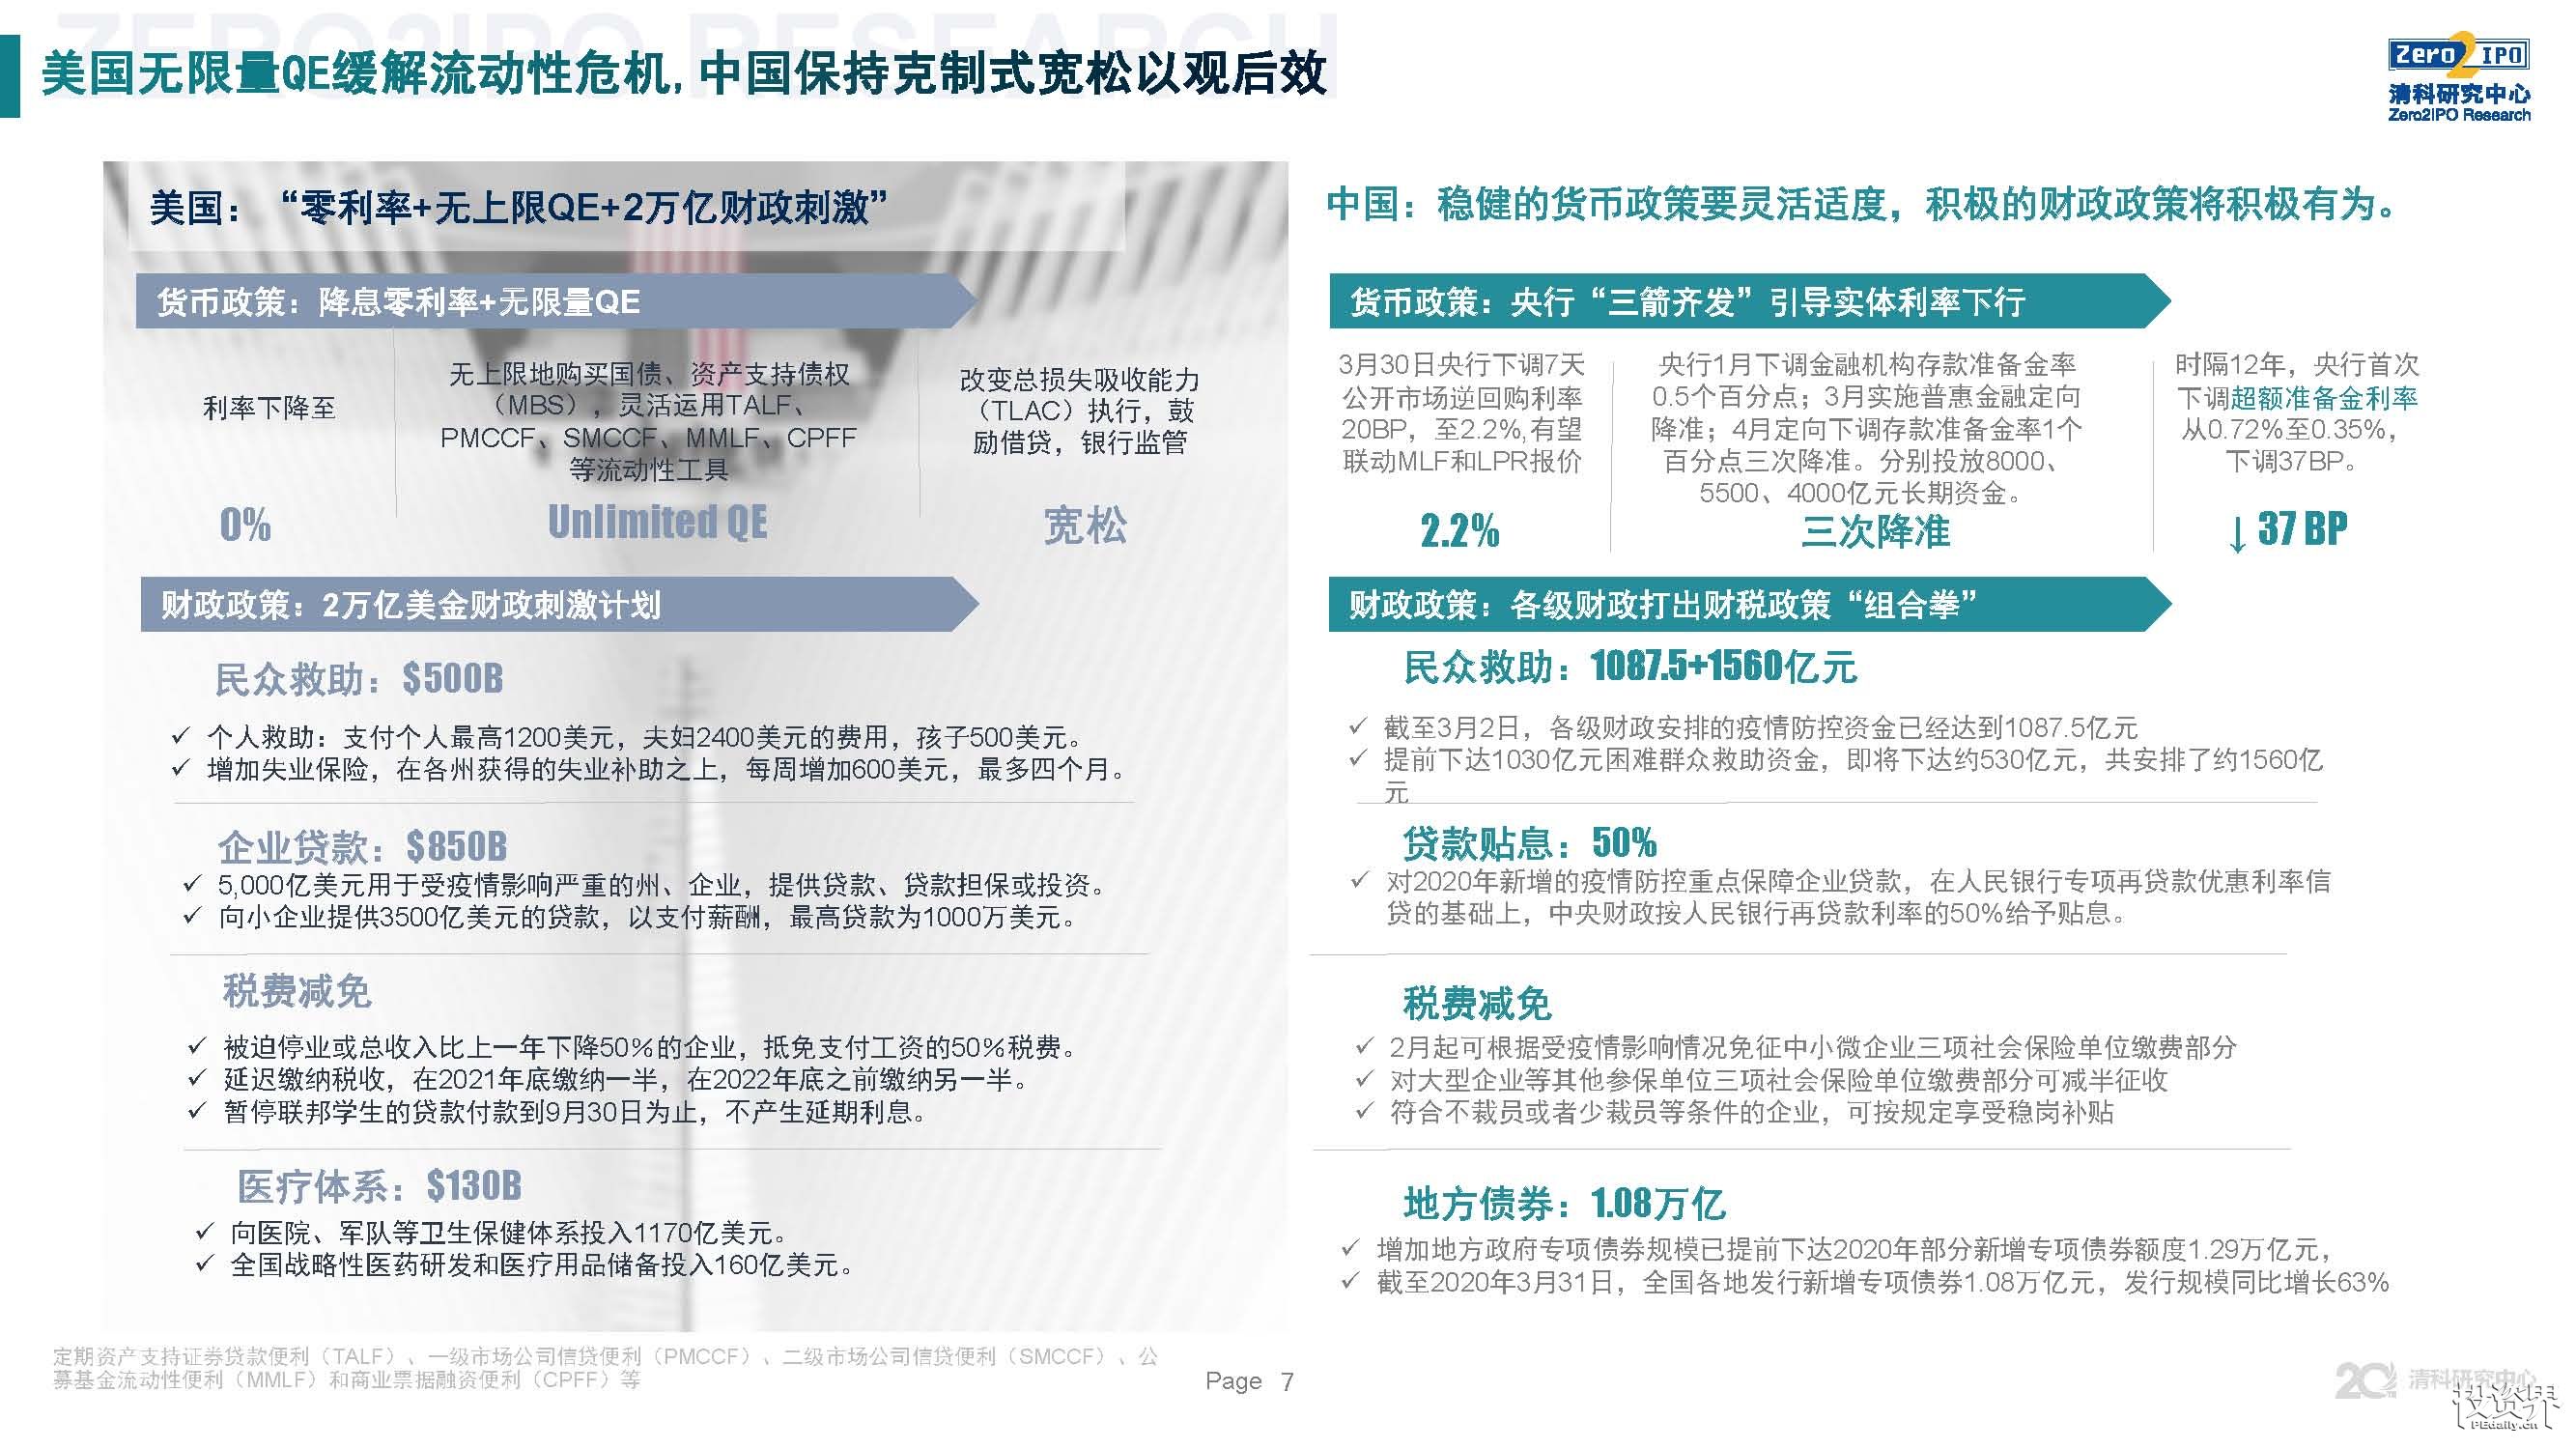 2020年*季度中国股权投资市场回顾与展望